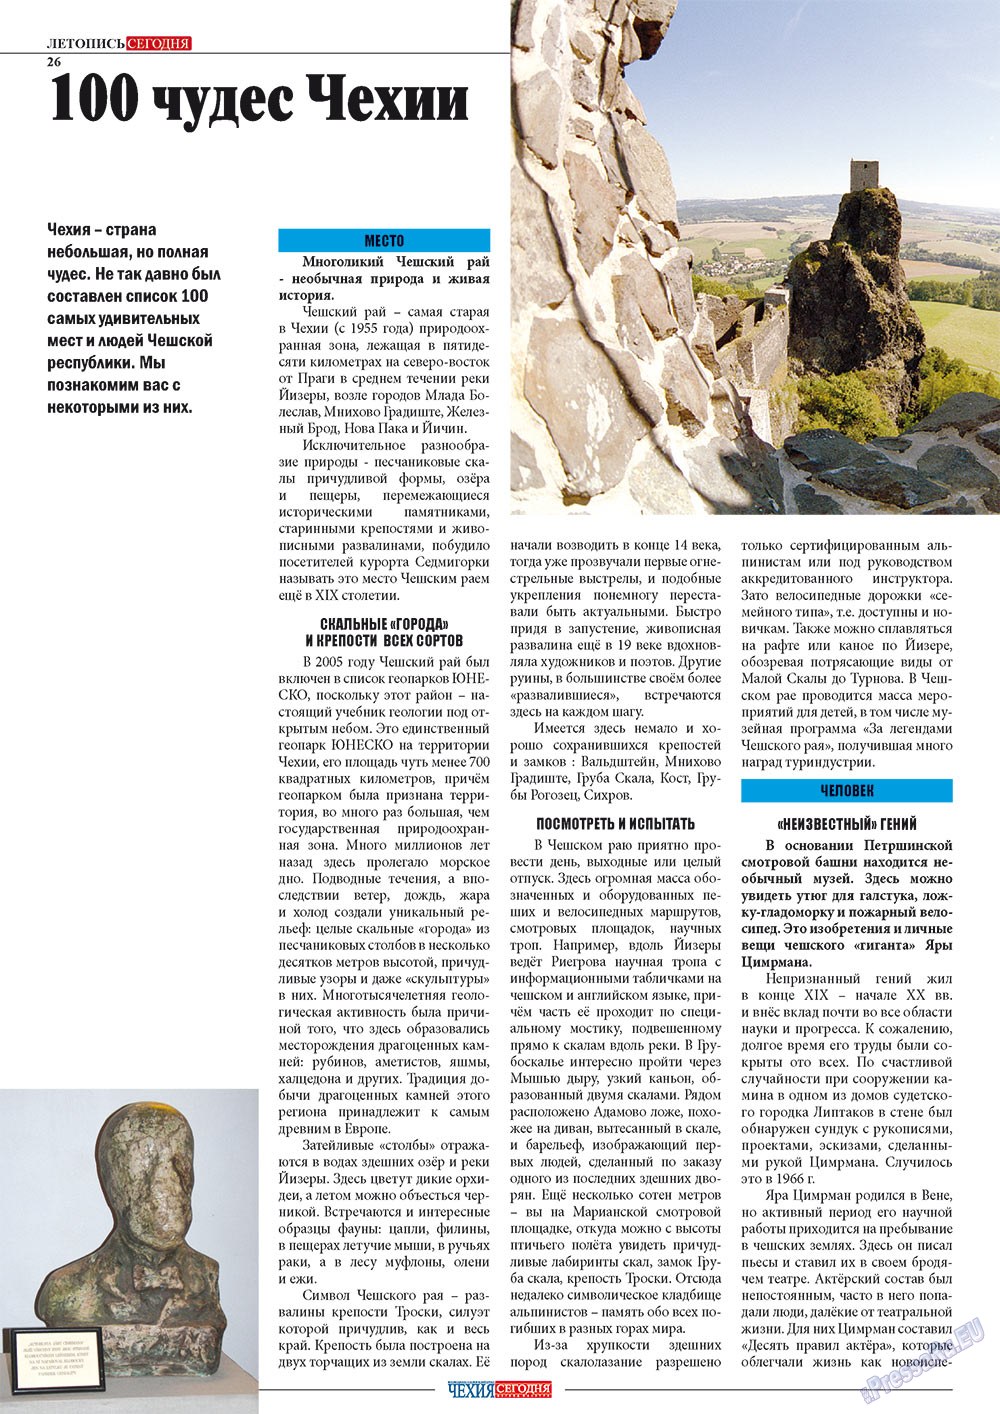 Чехия сегодня, журнал. 2012 №167 стр.28